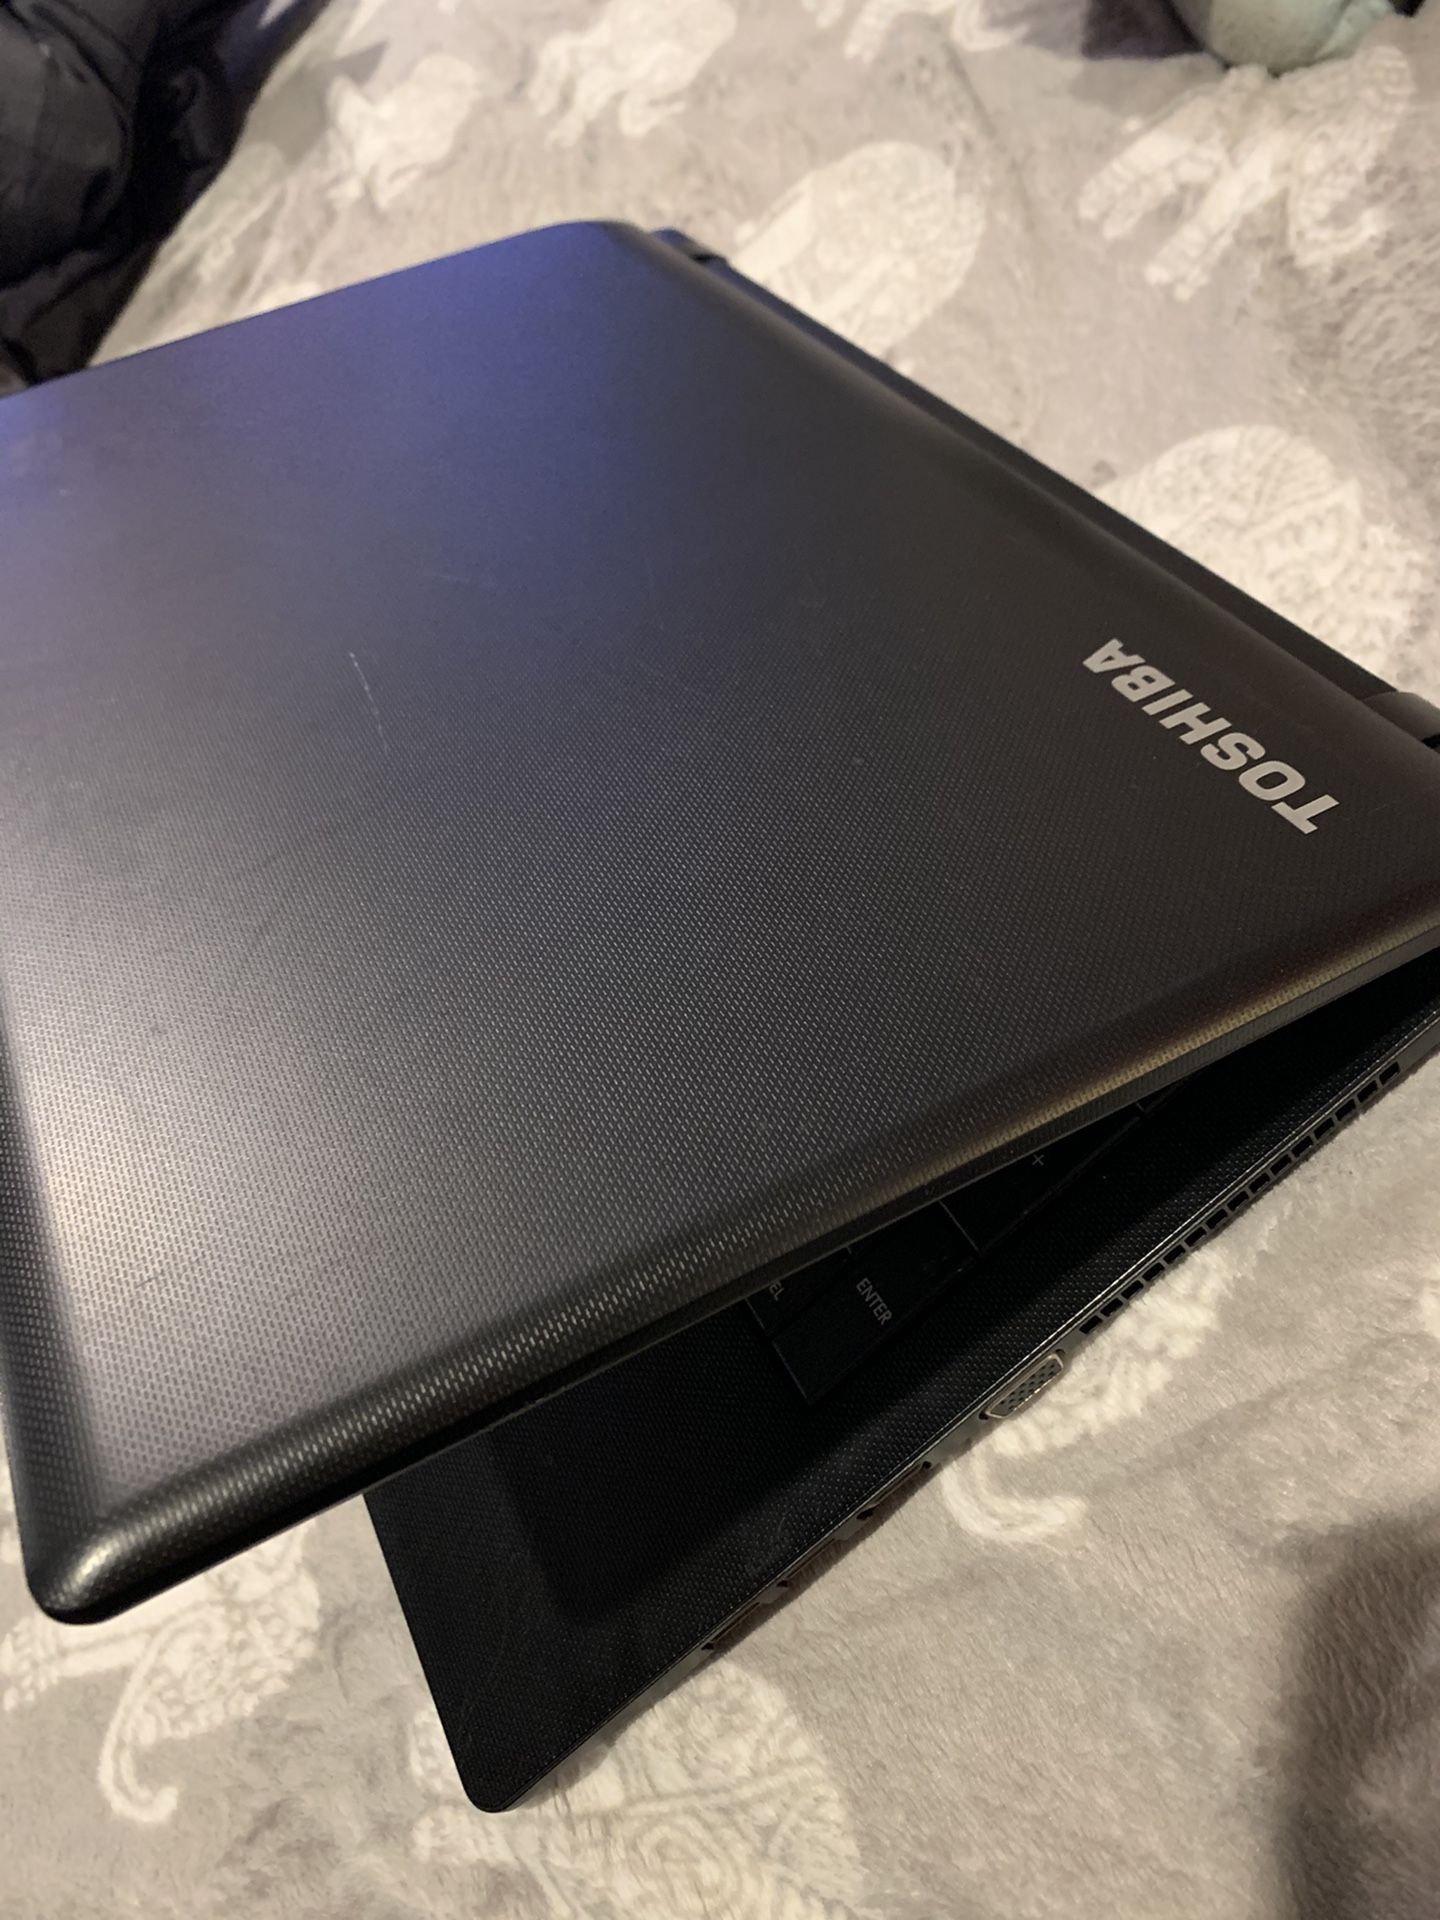 2015 Toshiba satellite laptop